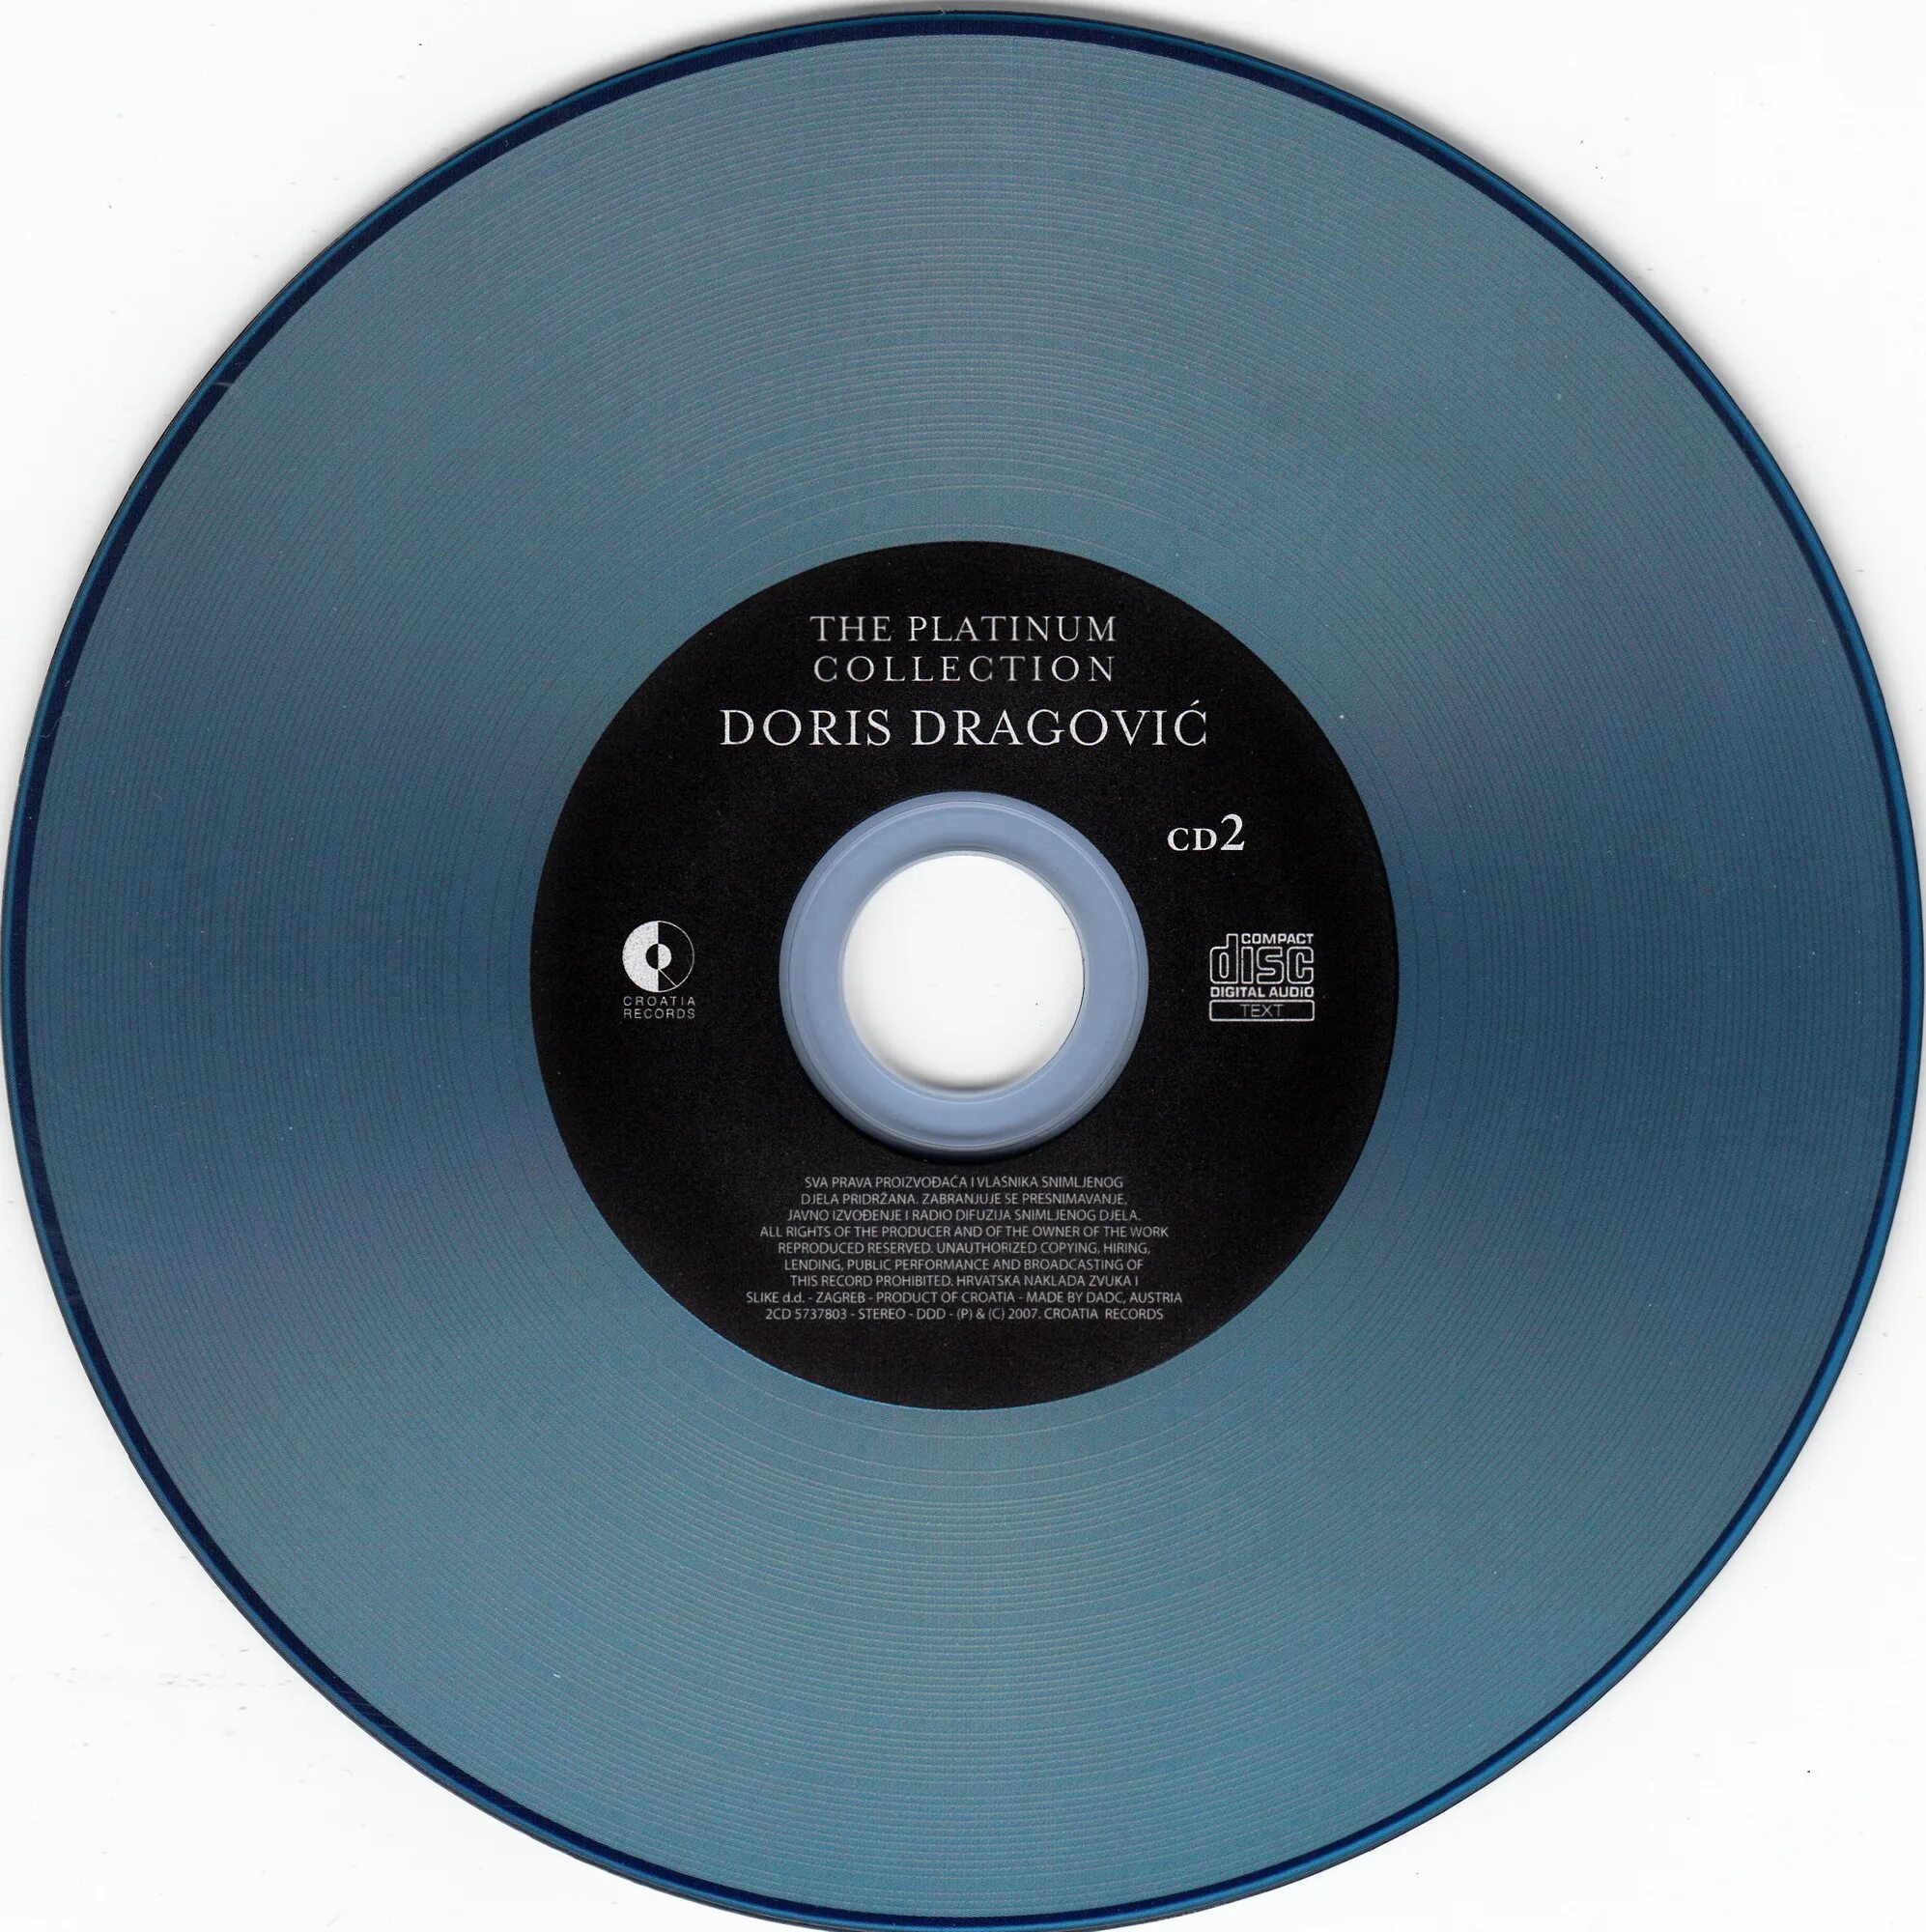 Platinum collection 2000 CD. Платиновая коллекция CD. Воскресение - платиновая коллекция (cd1). Zdravko Čolić - the Platinum collection обложка.